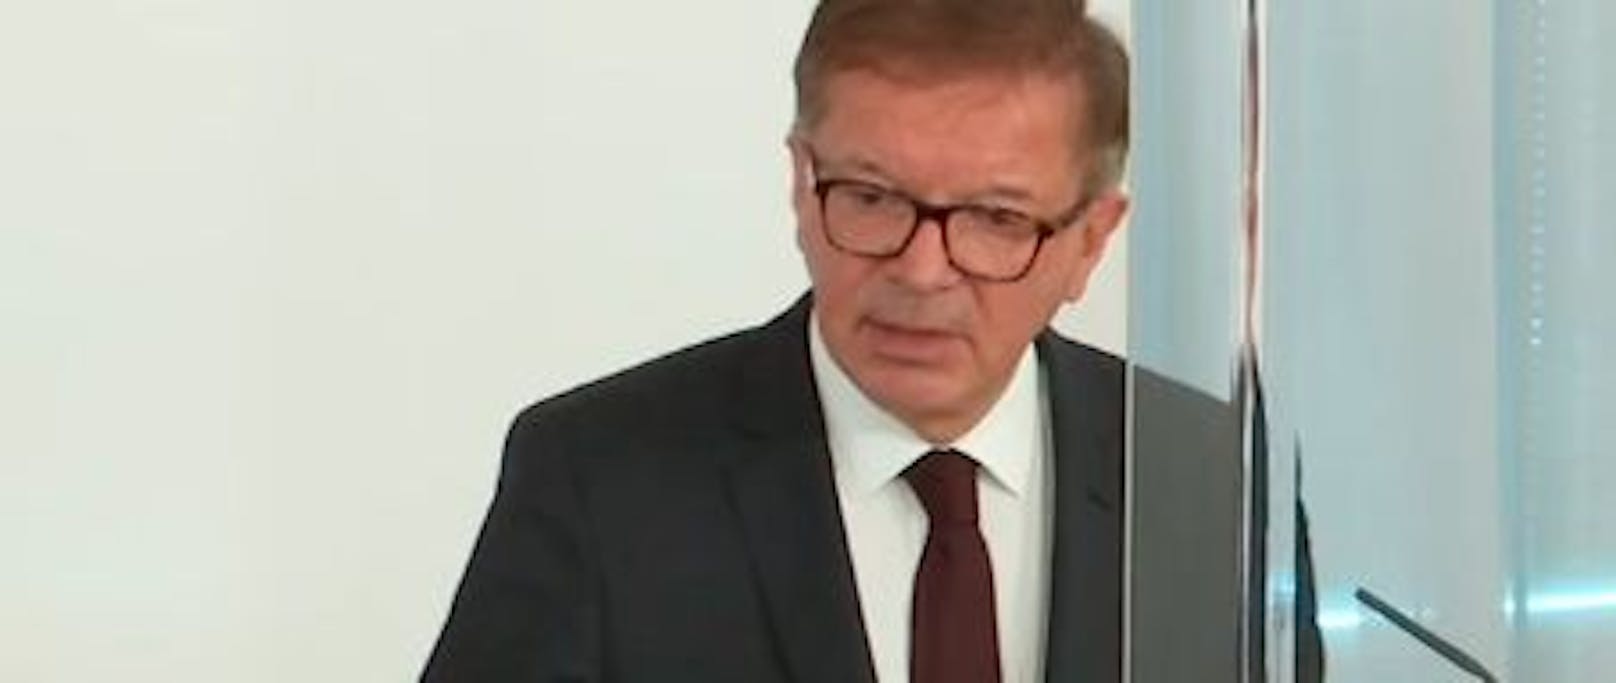 Rudolf Anschober während der Pressekonferenz